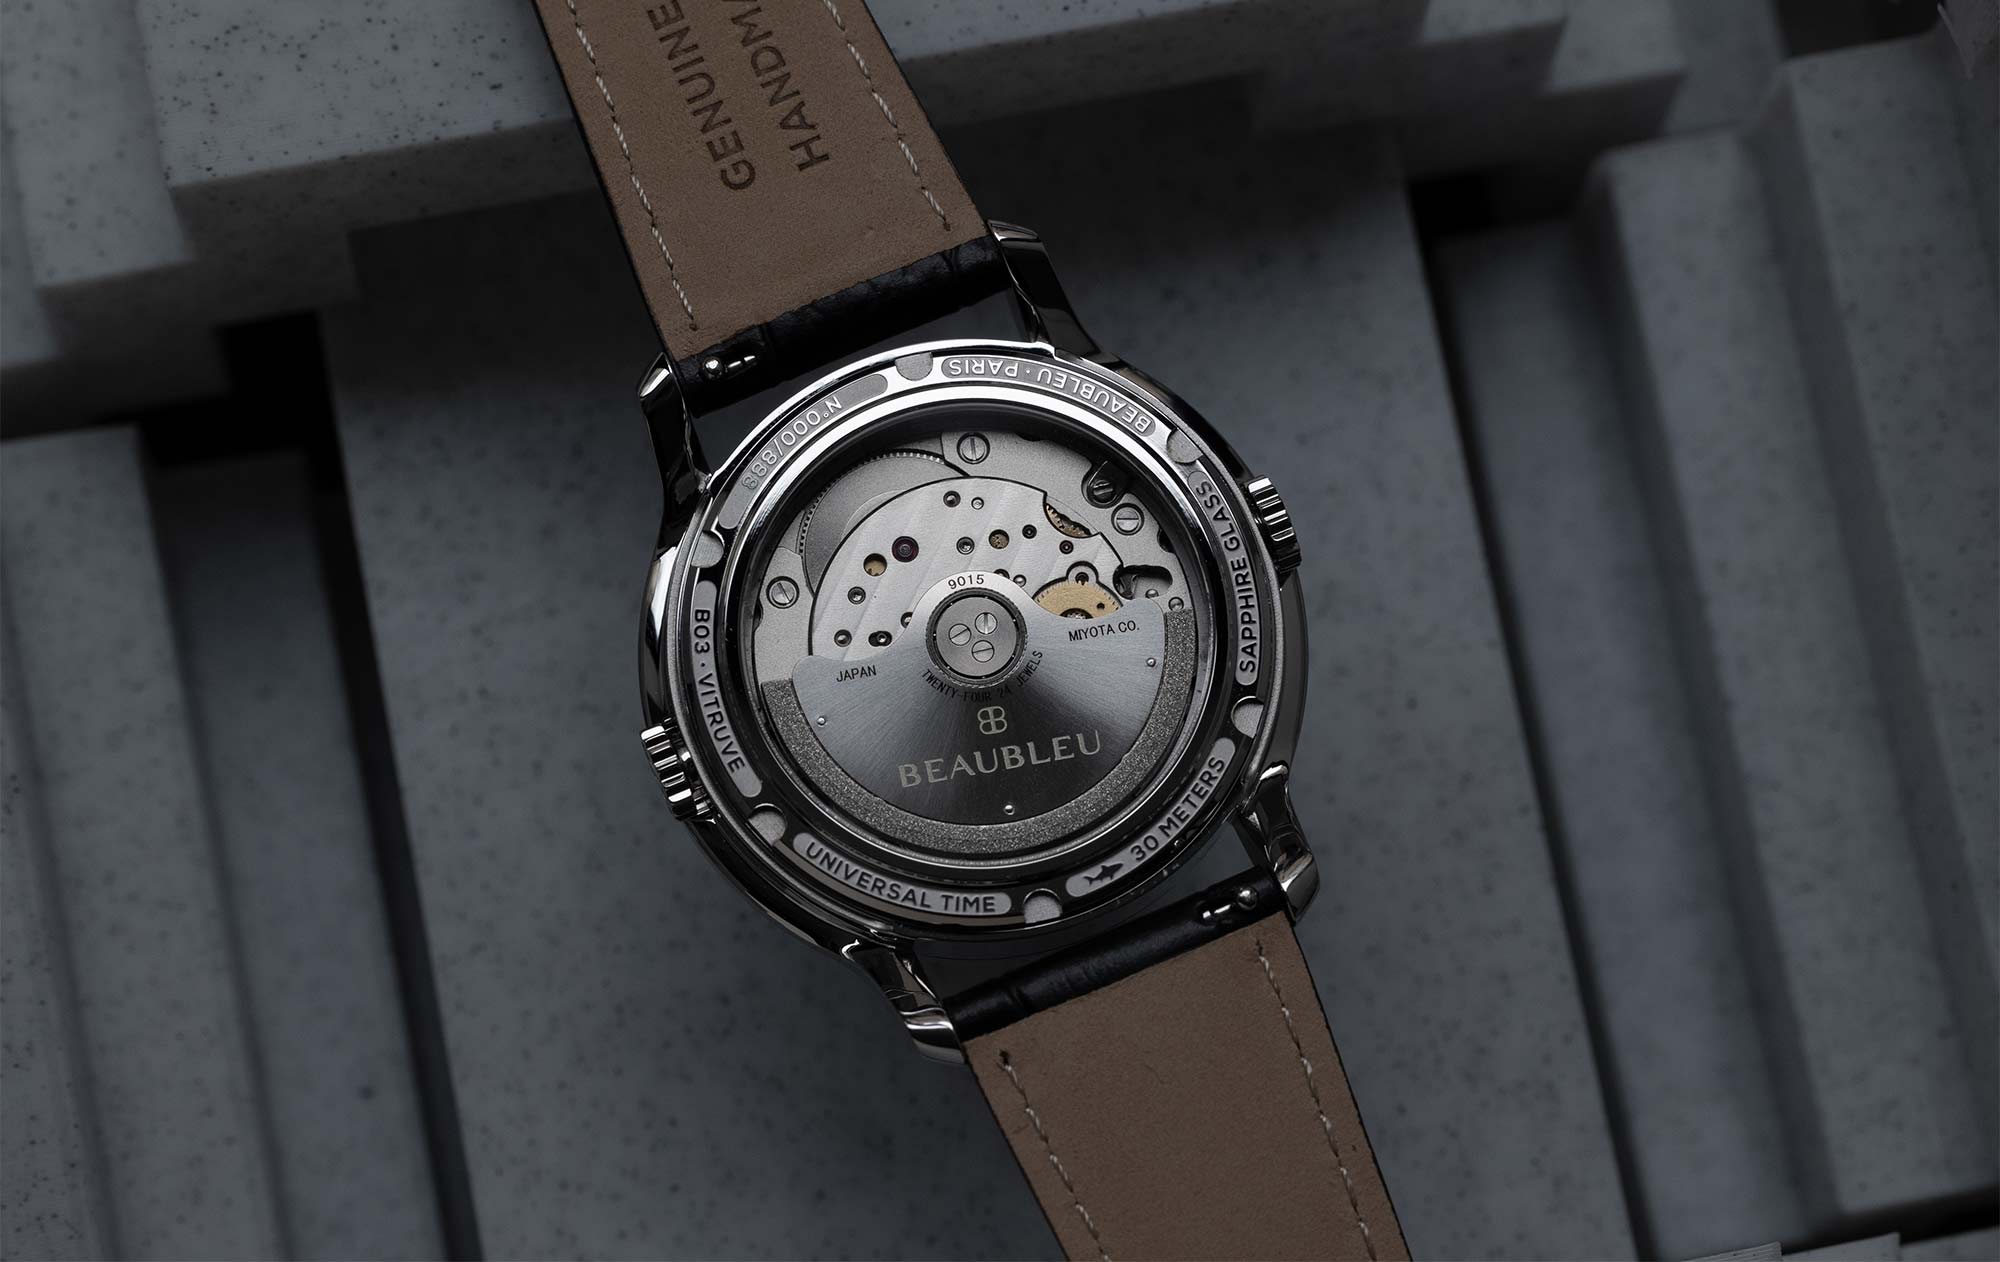 Fond de boite de montre aux aiguilles rondes vitruve GMT Beaubleu Paris